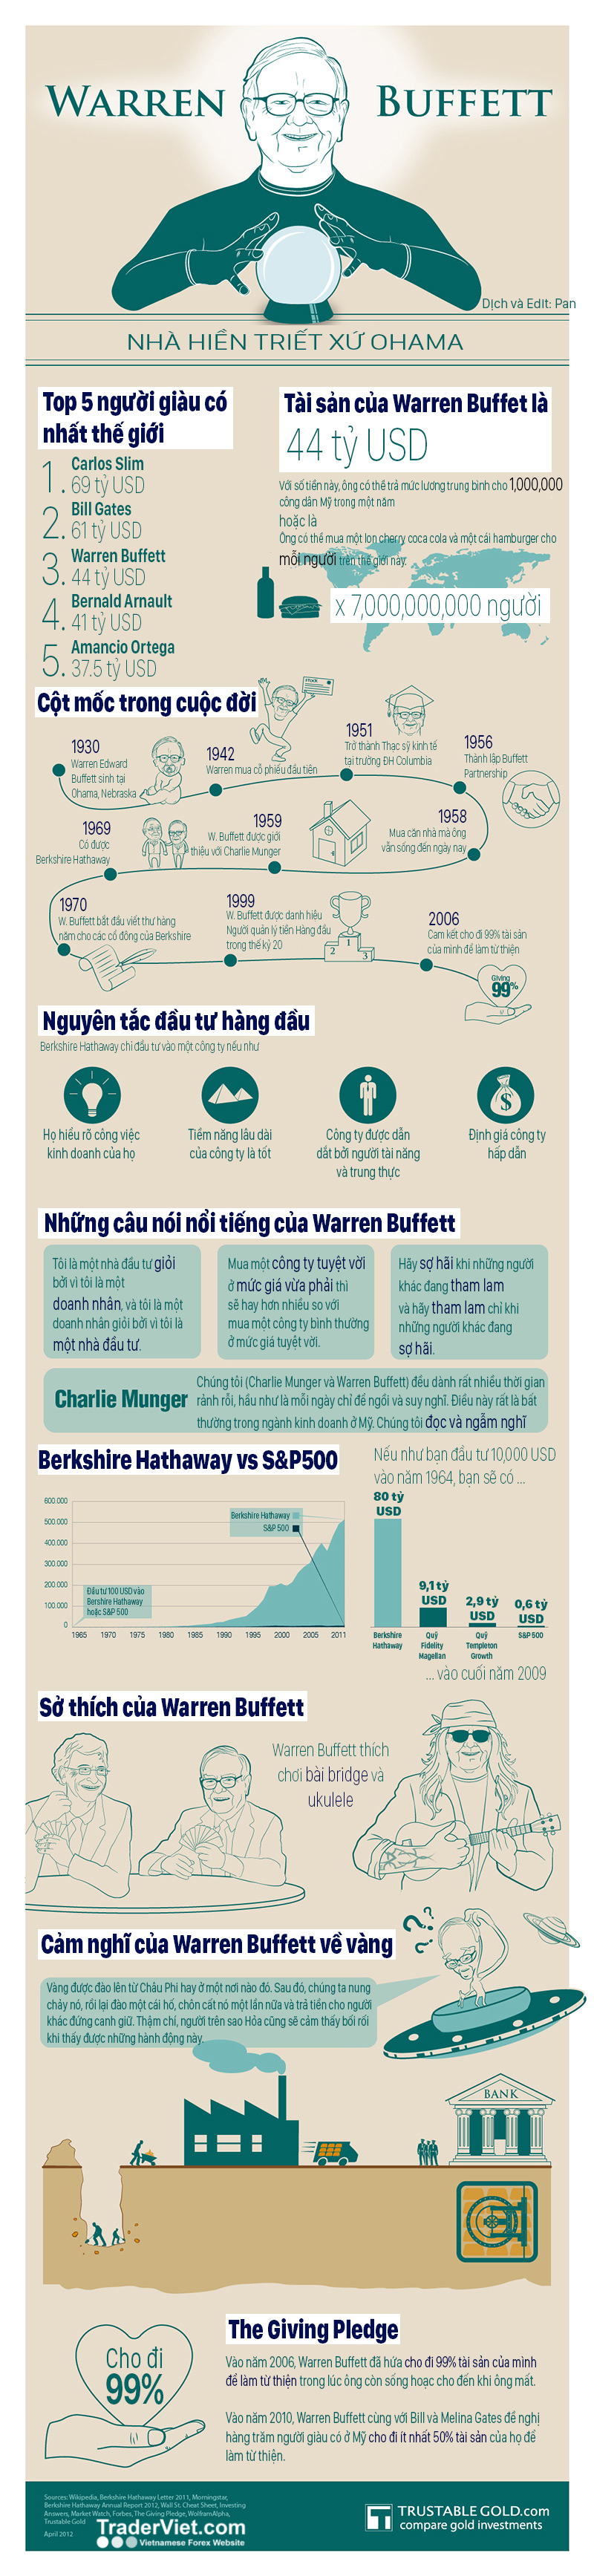 warren buffet infographic.jpg